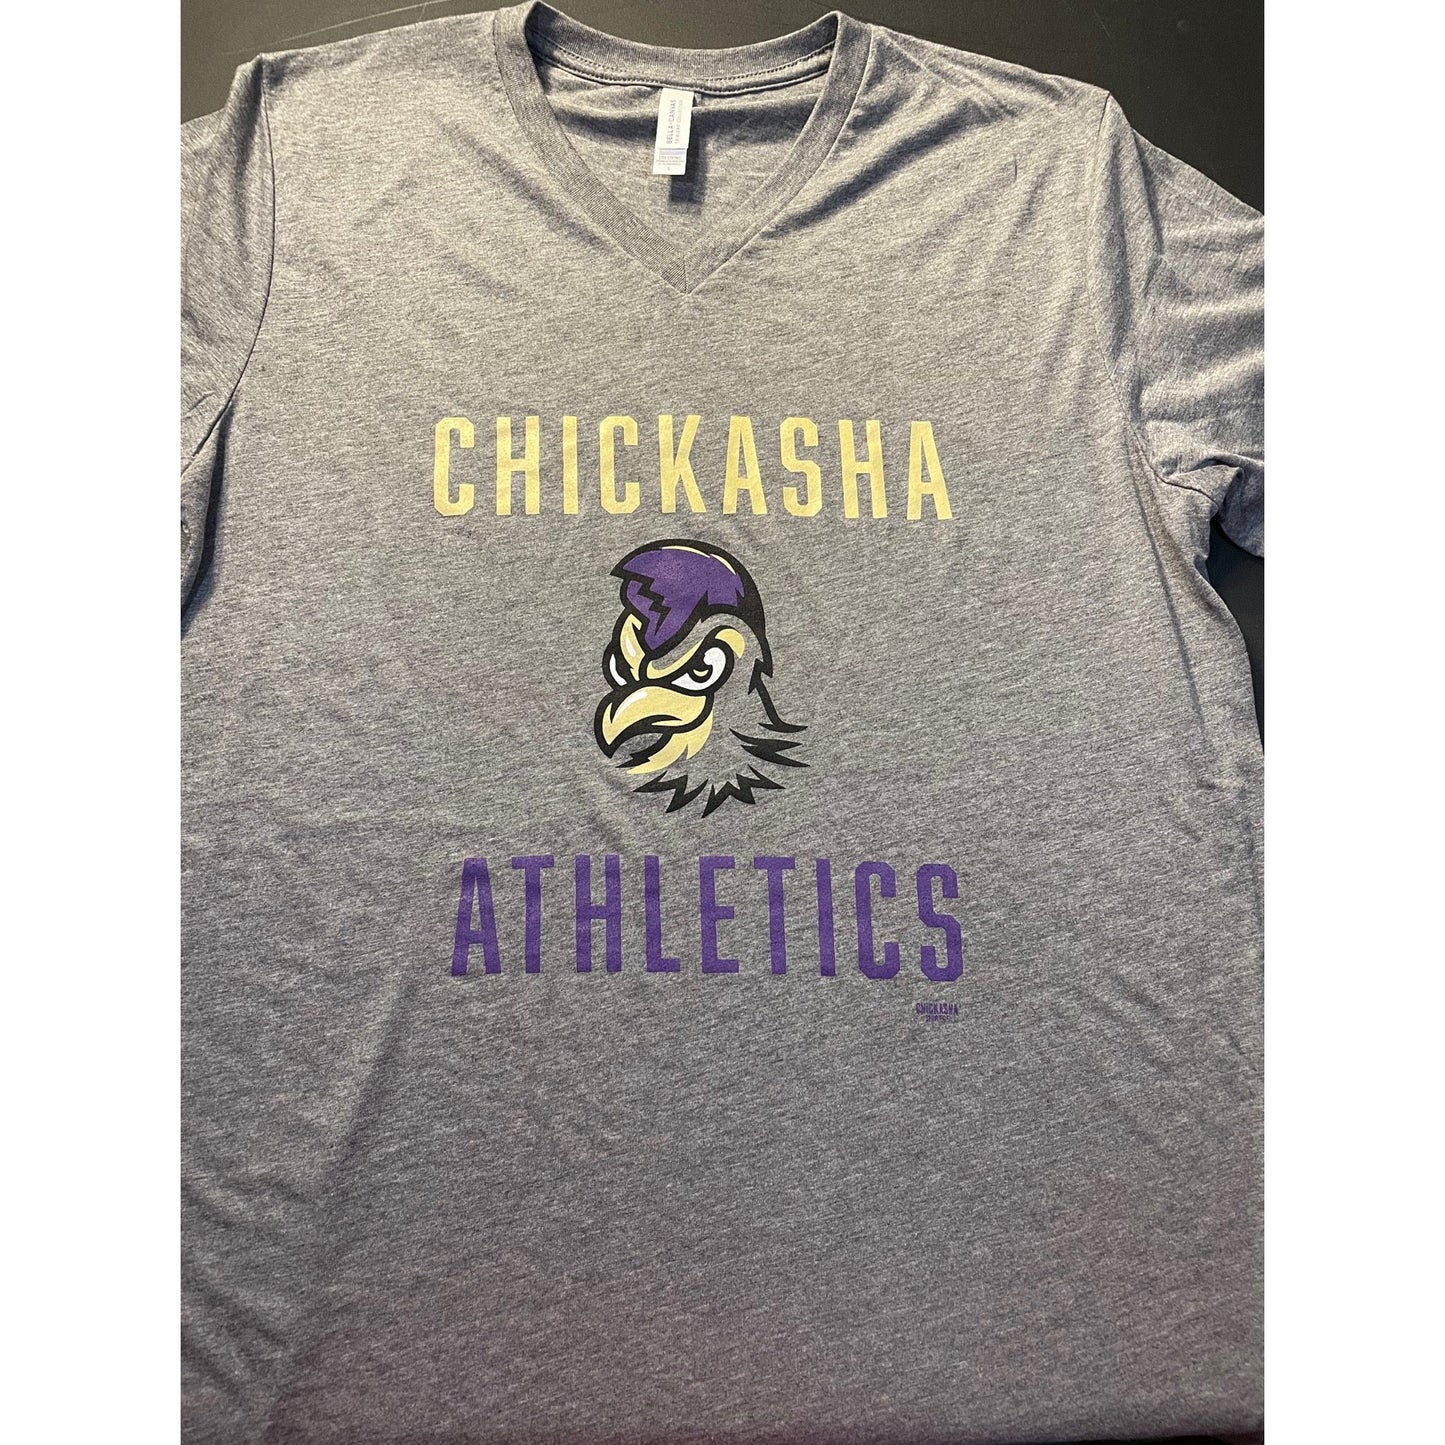 Chickasha Athletics - V Neck (unisex)